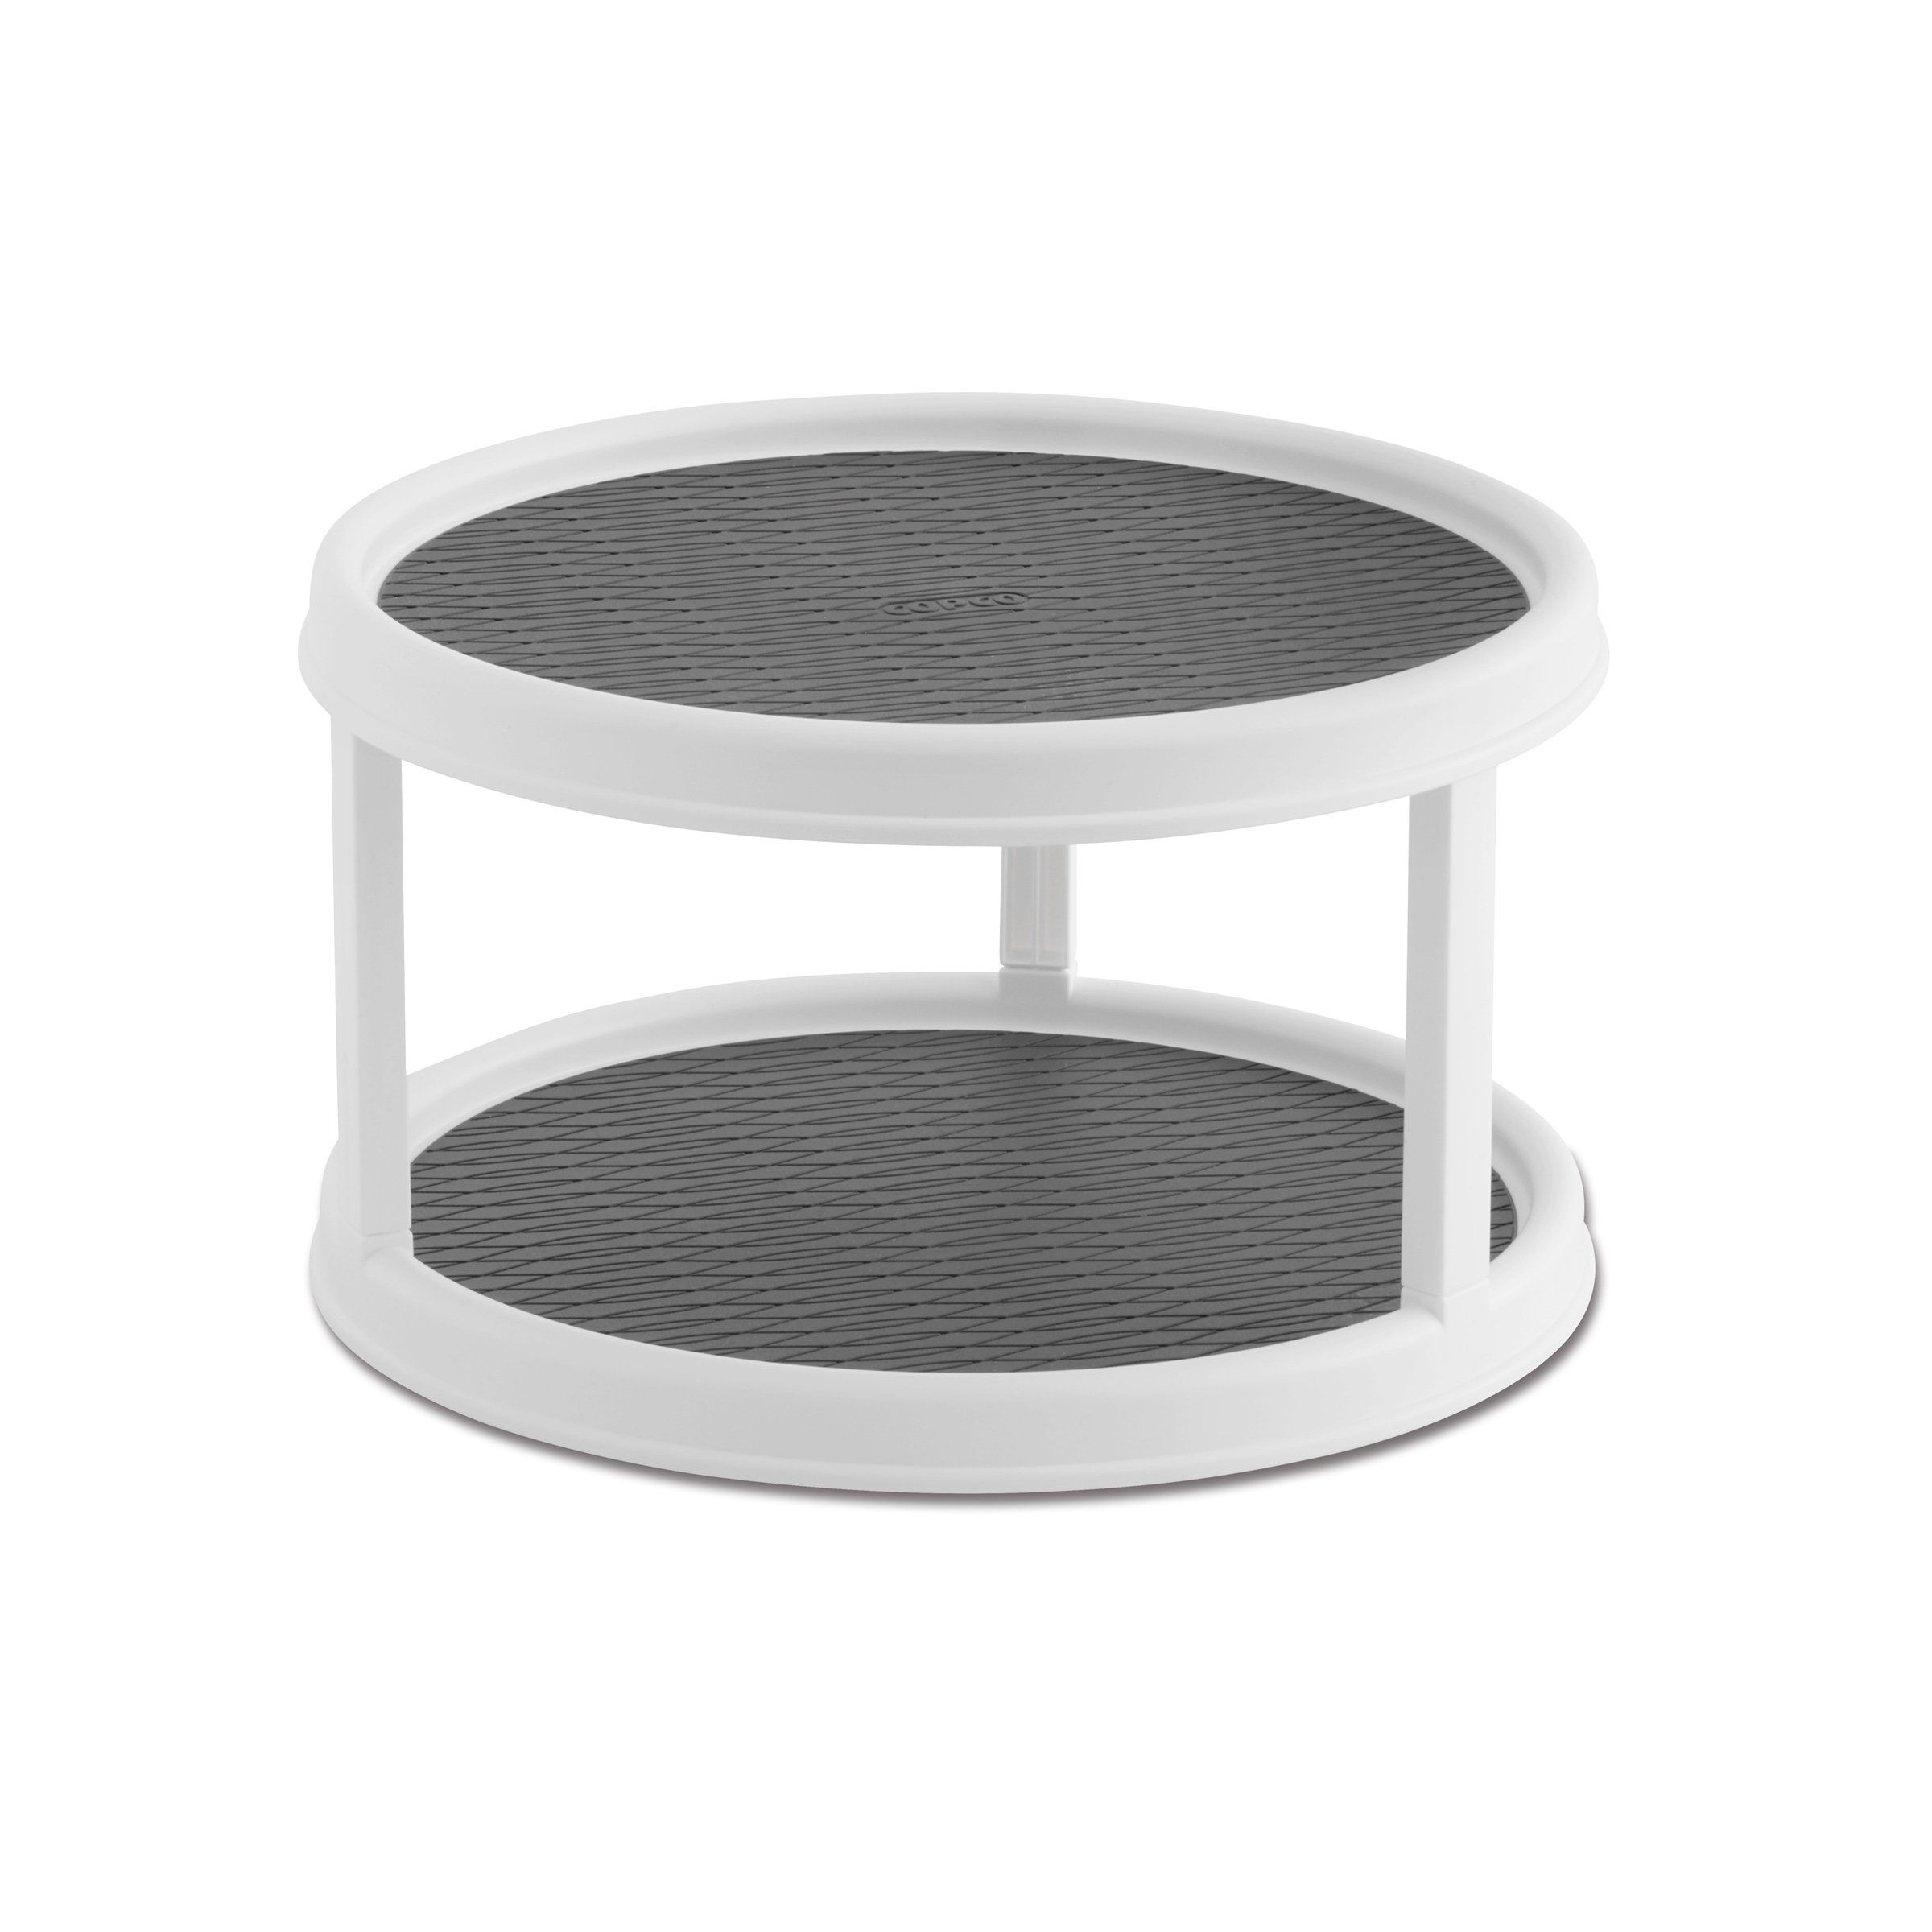 Copco Non-Skid 2 Tier Turntable, 12-Inch, White/Gray | Amazon (US)